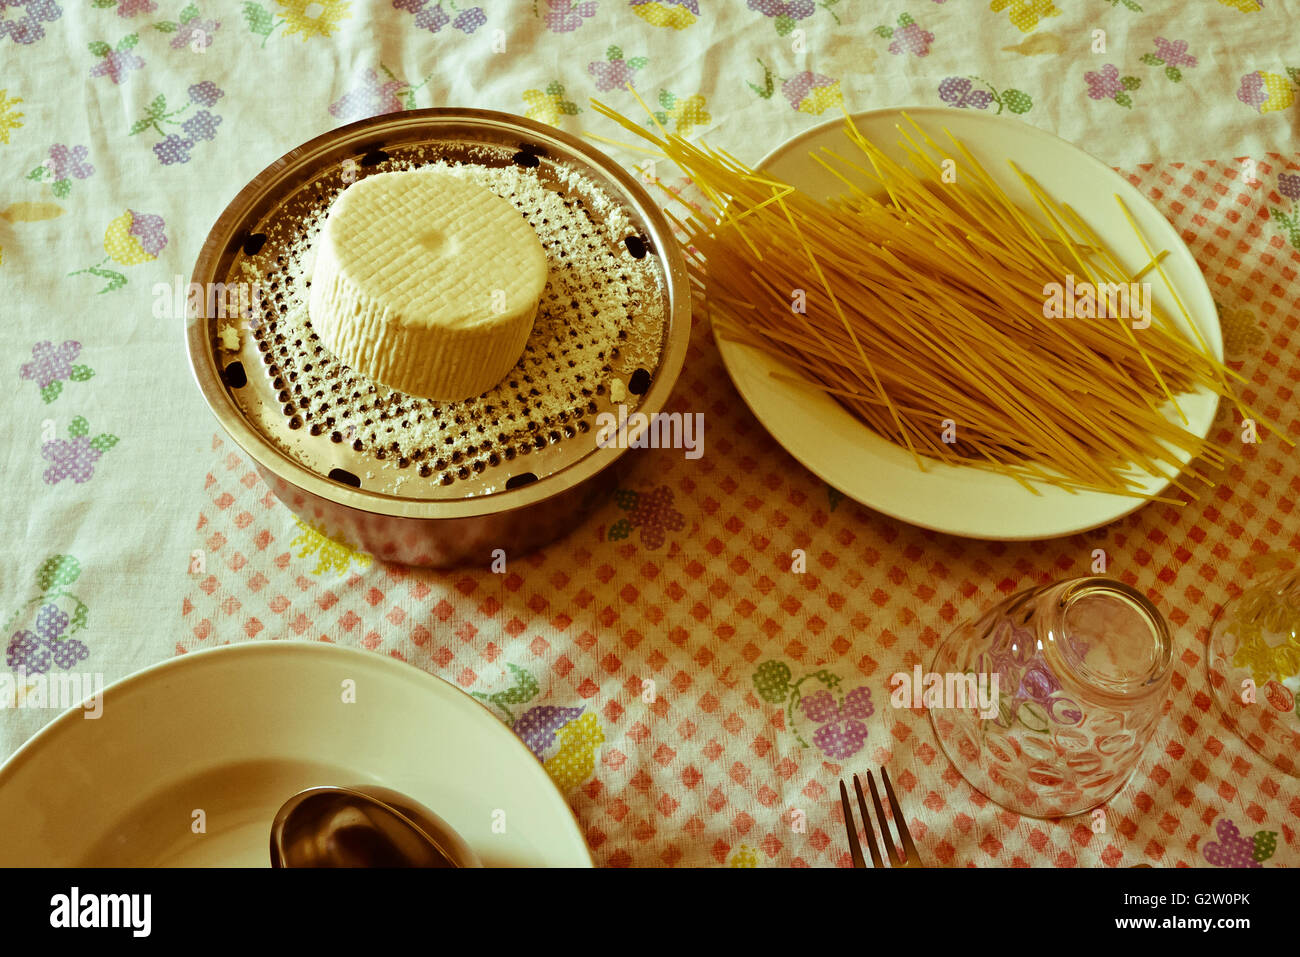 cheese,spaghetti and utensils. Stock Photo